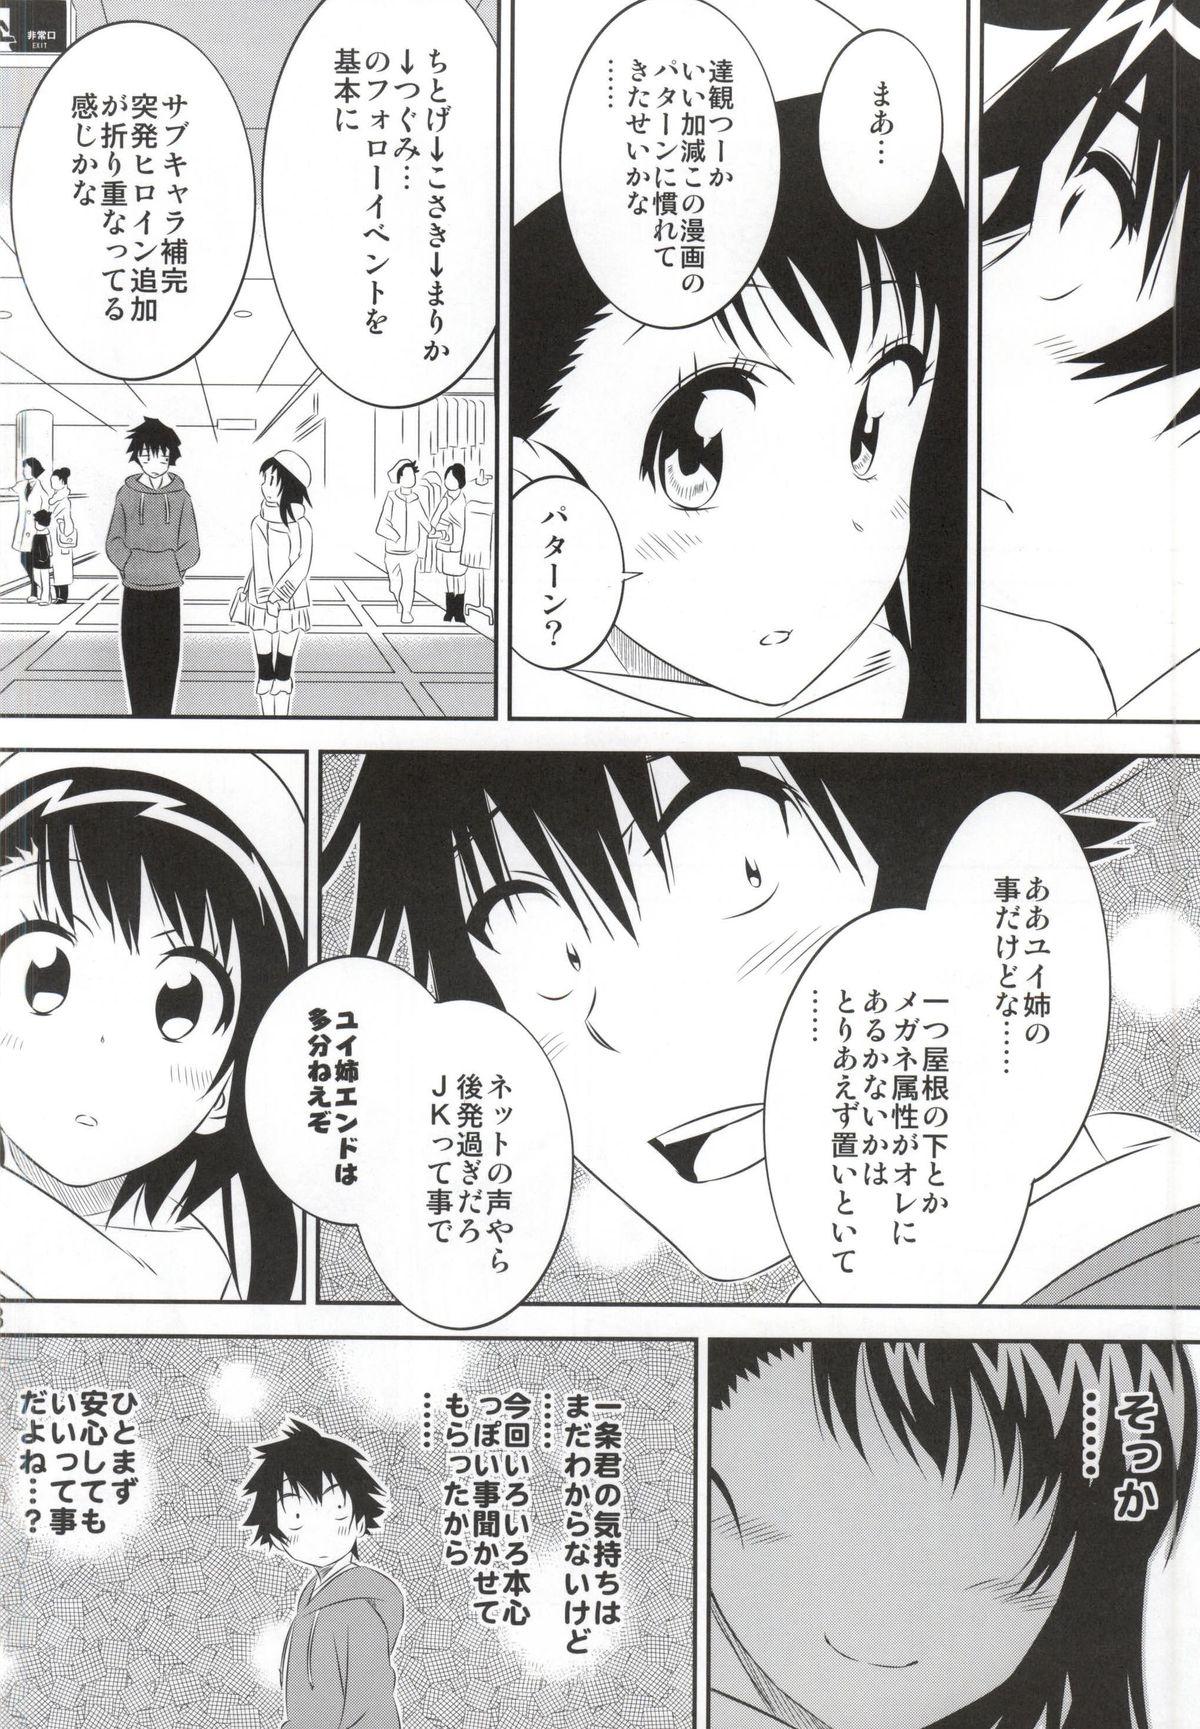 Butt Sex Kosaki-chan no Yuuutsu 4 - Nisekoi Thylinh - Page 7